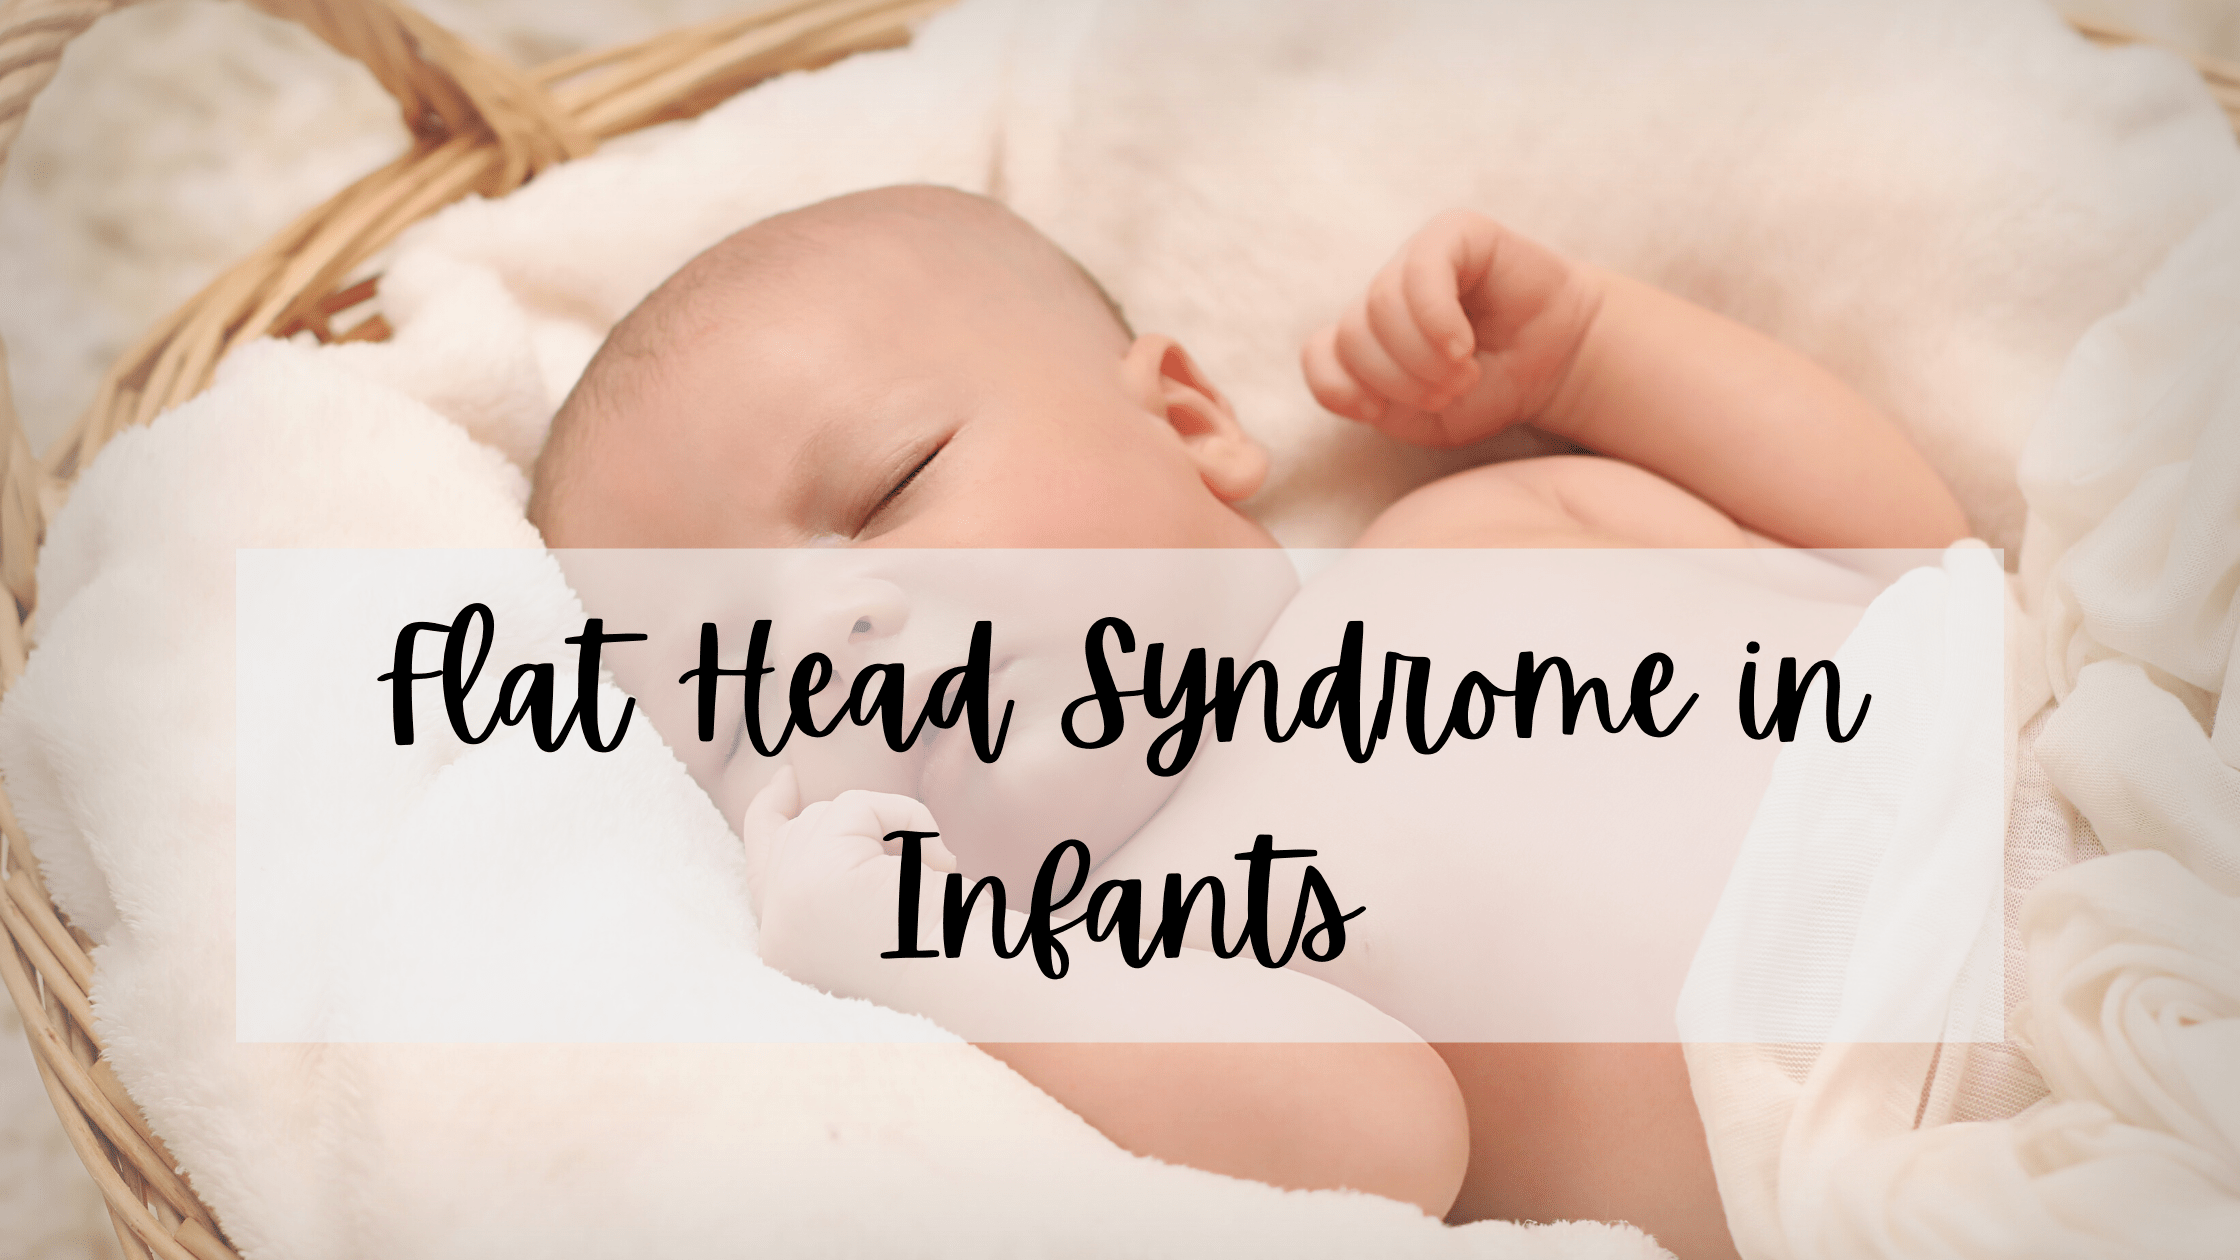 Brachycephaly or flat Head Syndrome